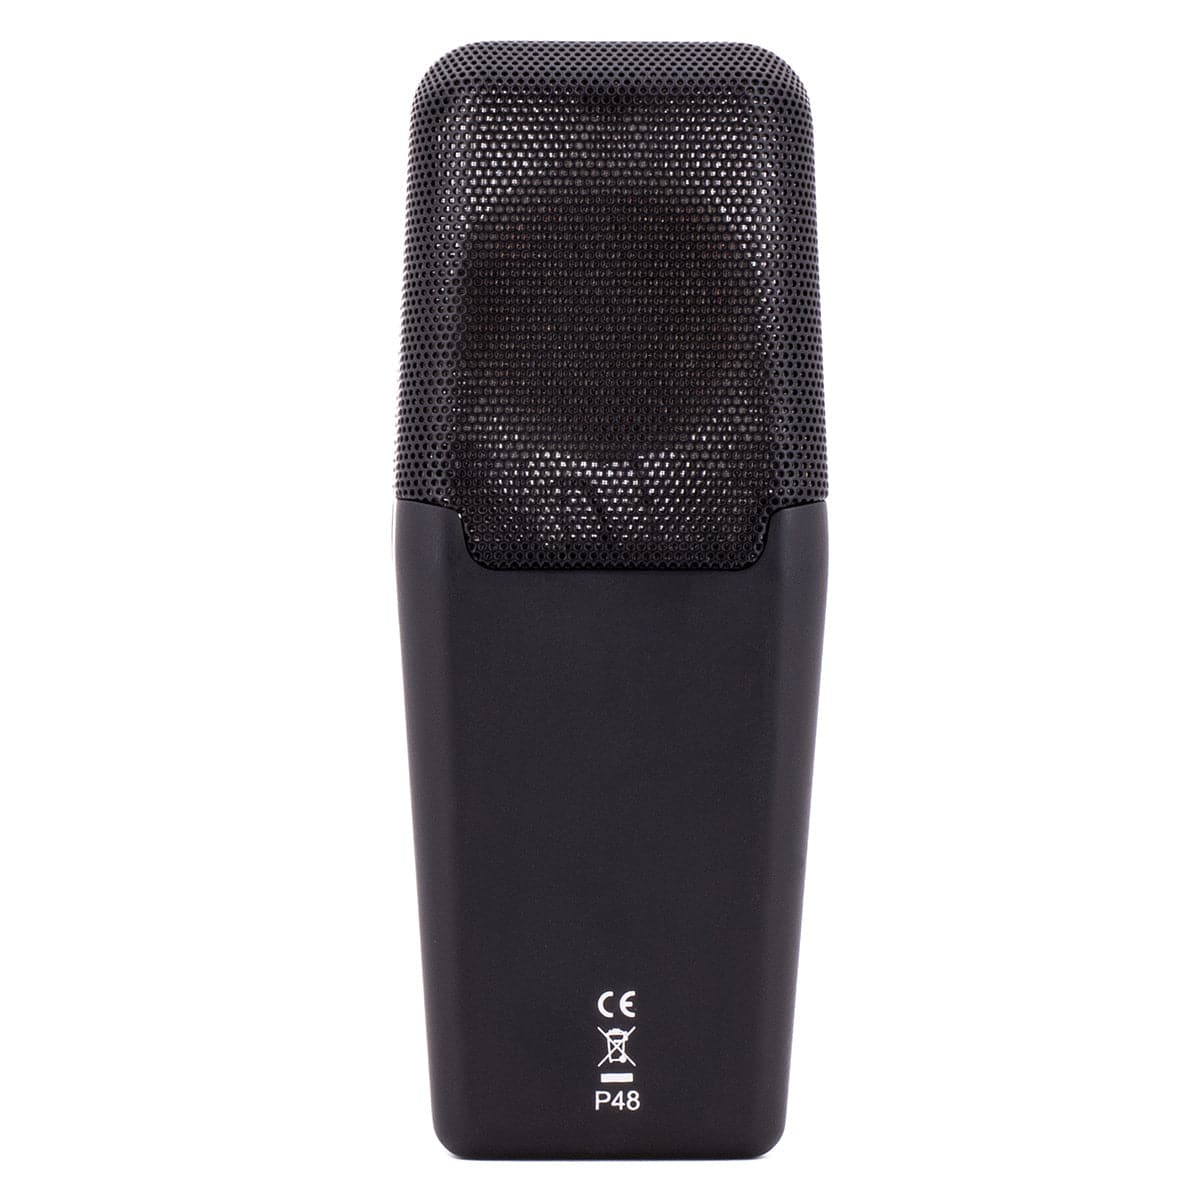 CAD E50 Studio Condenser Microphone Kit